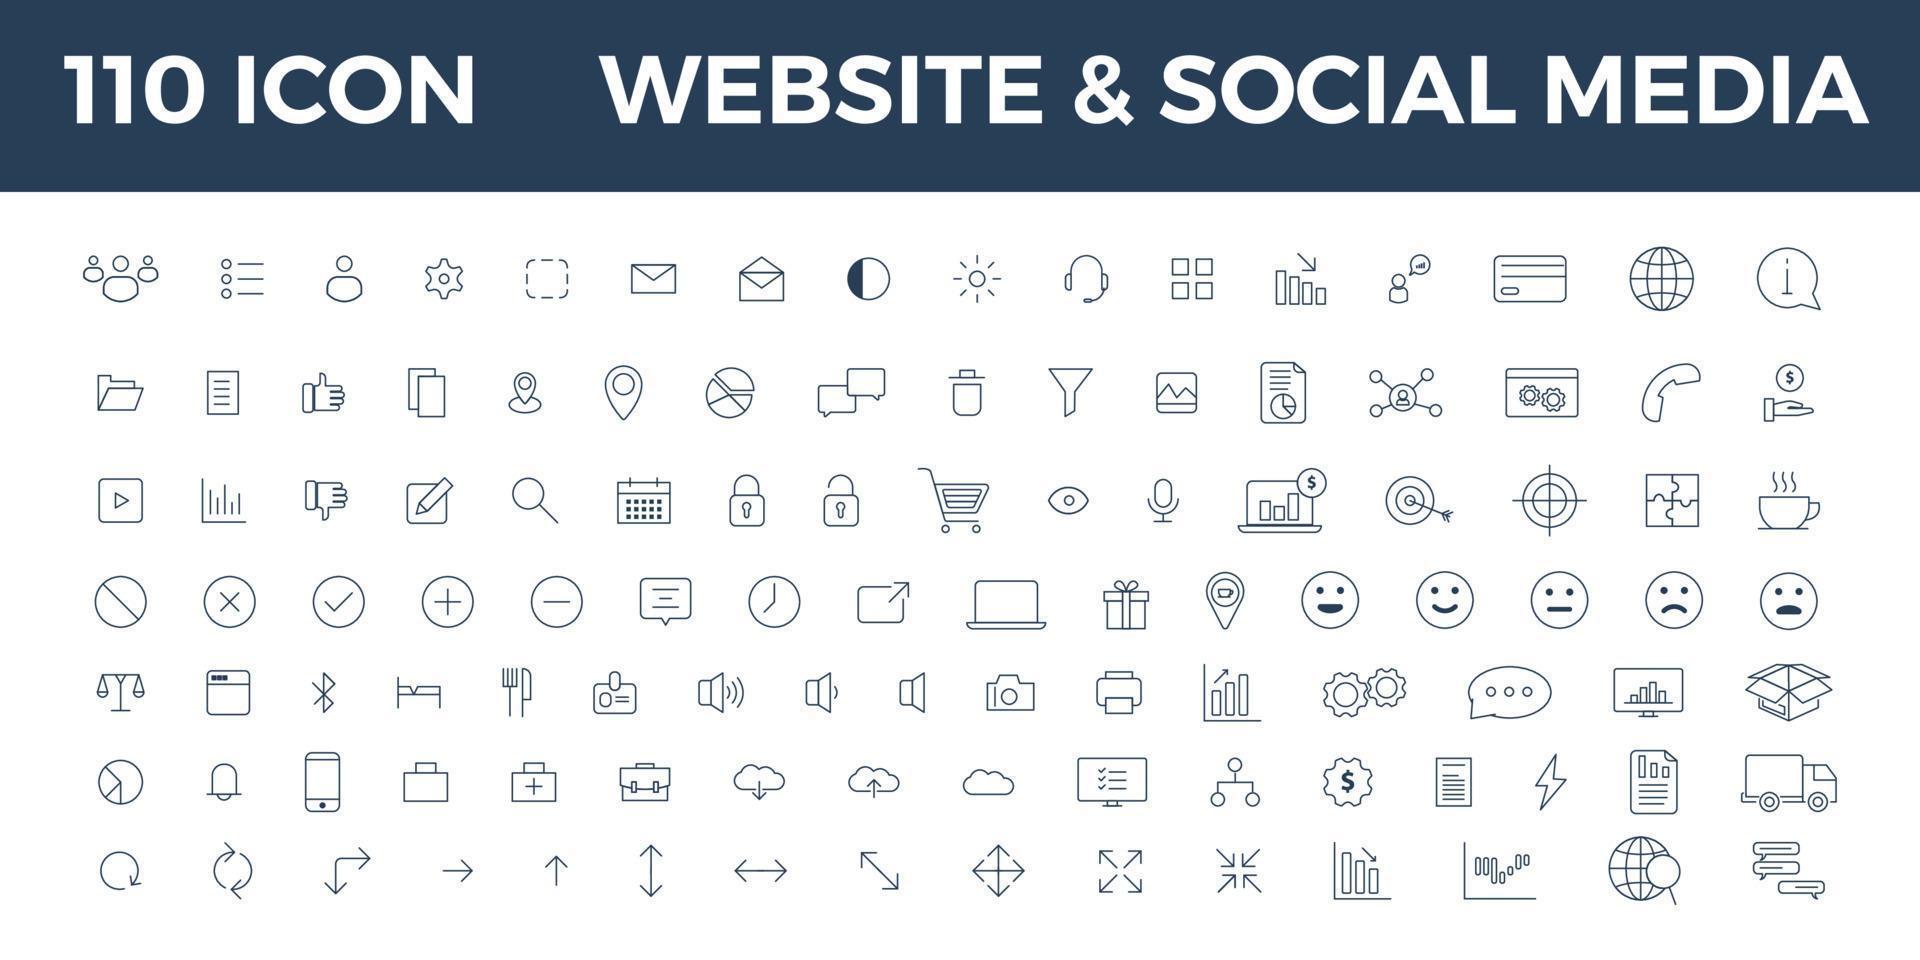 110 ikon webbplats och sociala medier komplett set vektor